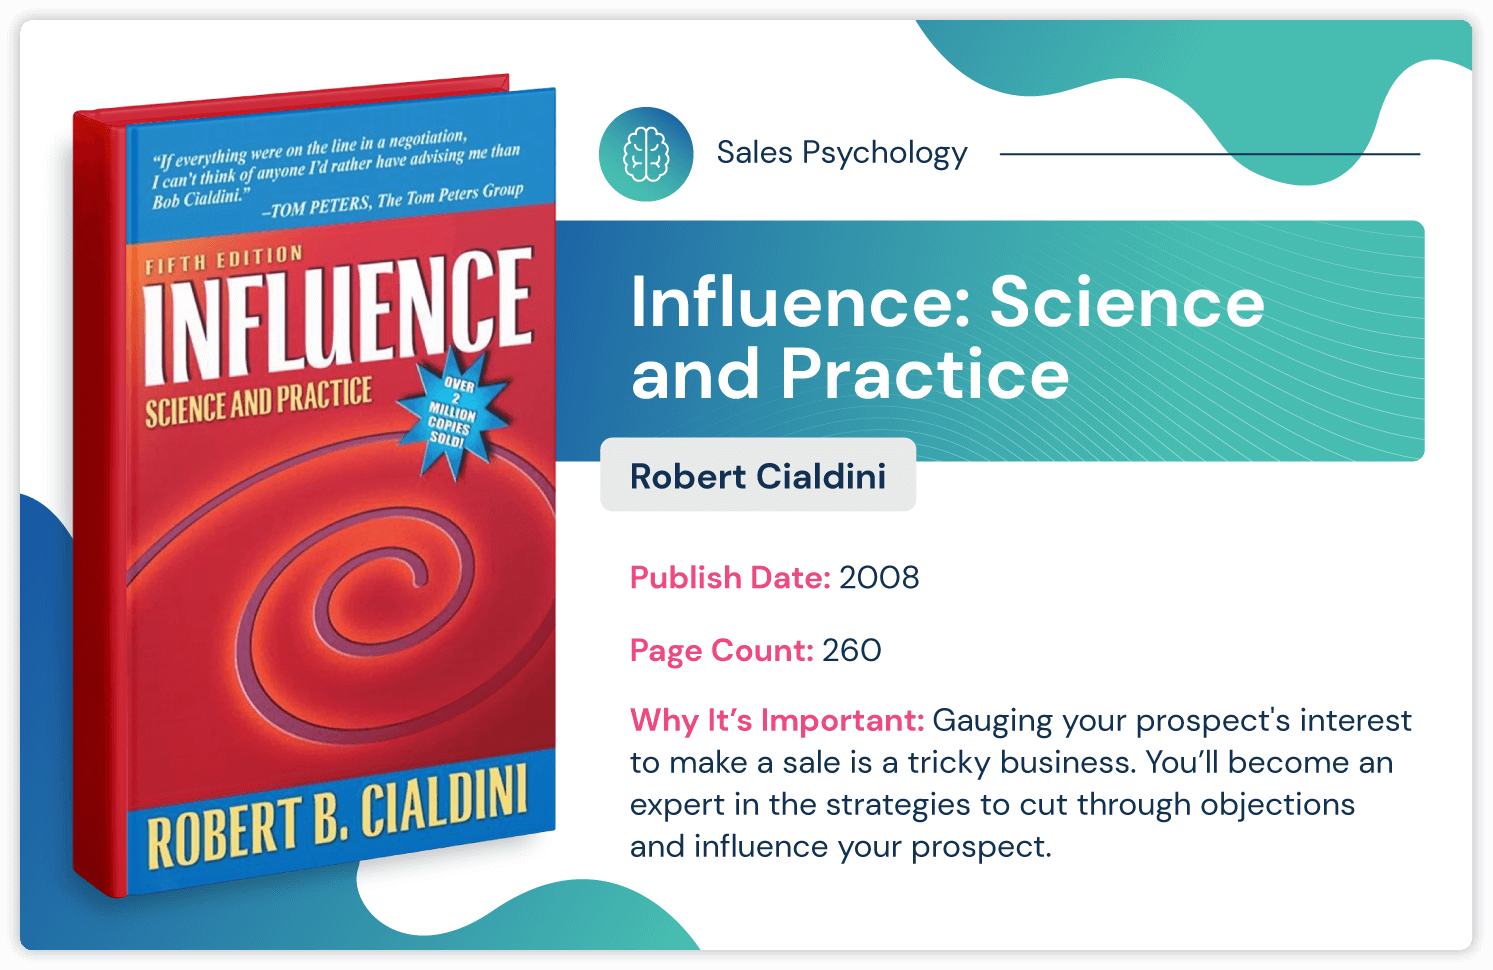 كتاب علم نفس المبيعات بعنوان "التأثير: العلم والممارسة" لروبرت سيالديني حول كيفية التأثير في استراتيجية المبيعات ؛ نُشر في عام 2008 ويبلغ طوله 260 صفحة.